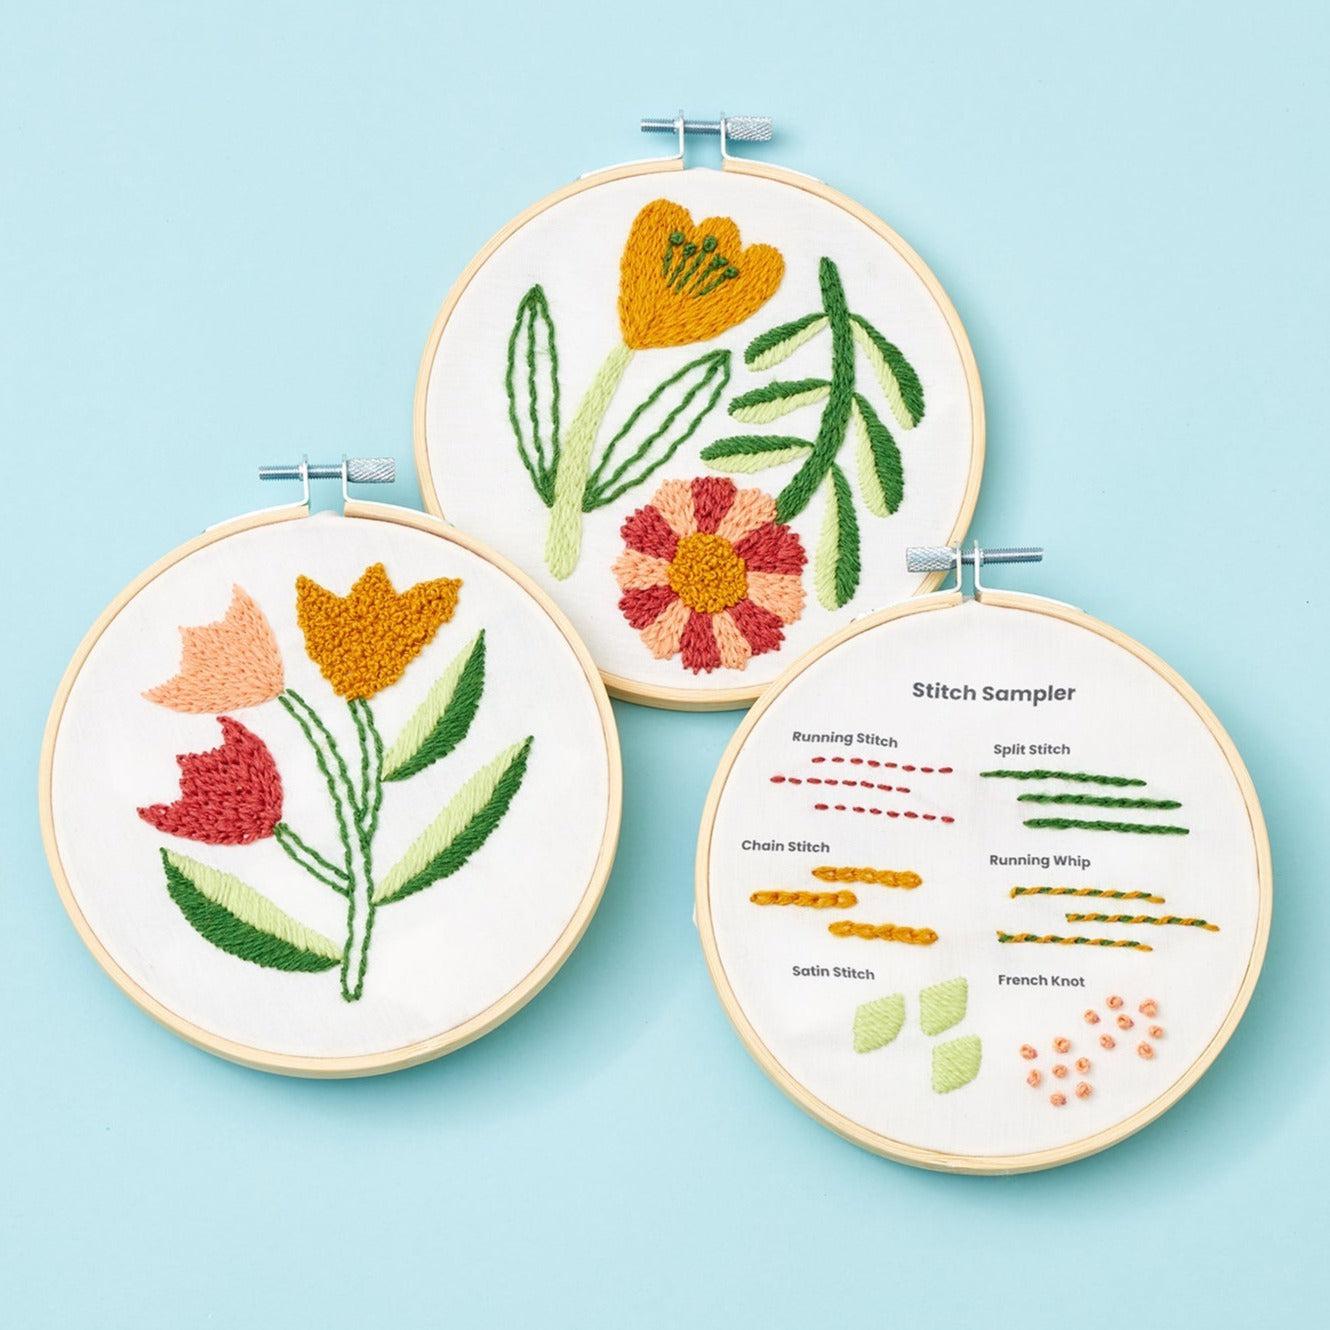 Garden Flowers, Beginner Embroidery Kit, Easy Embroidery Kit for